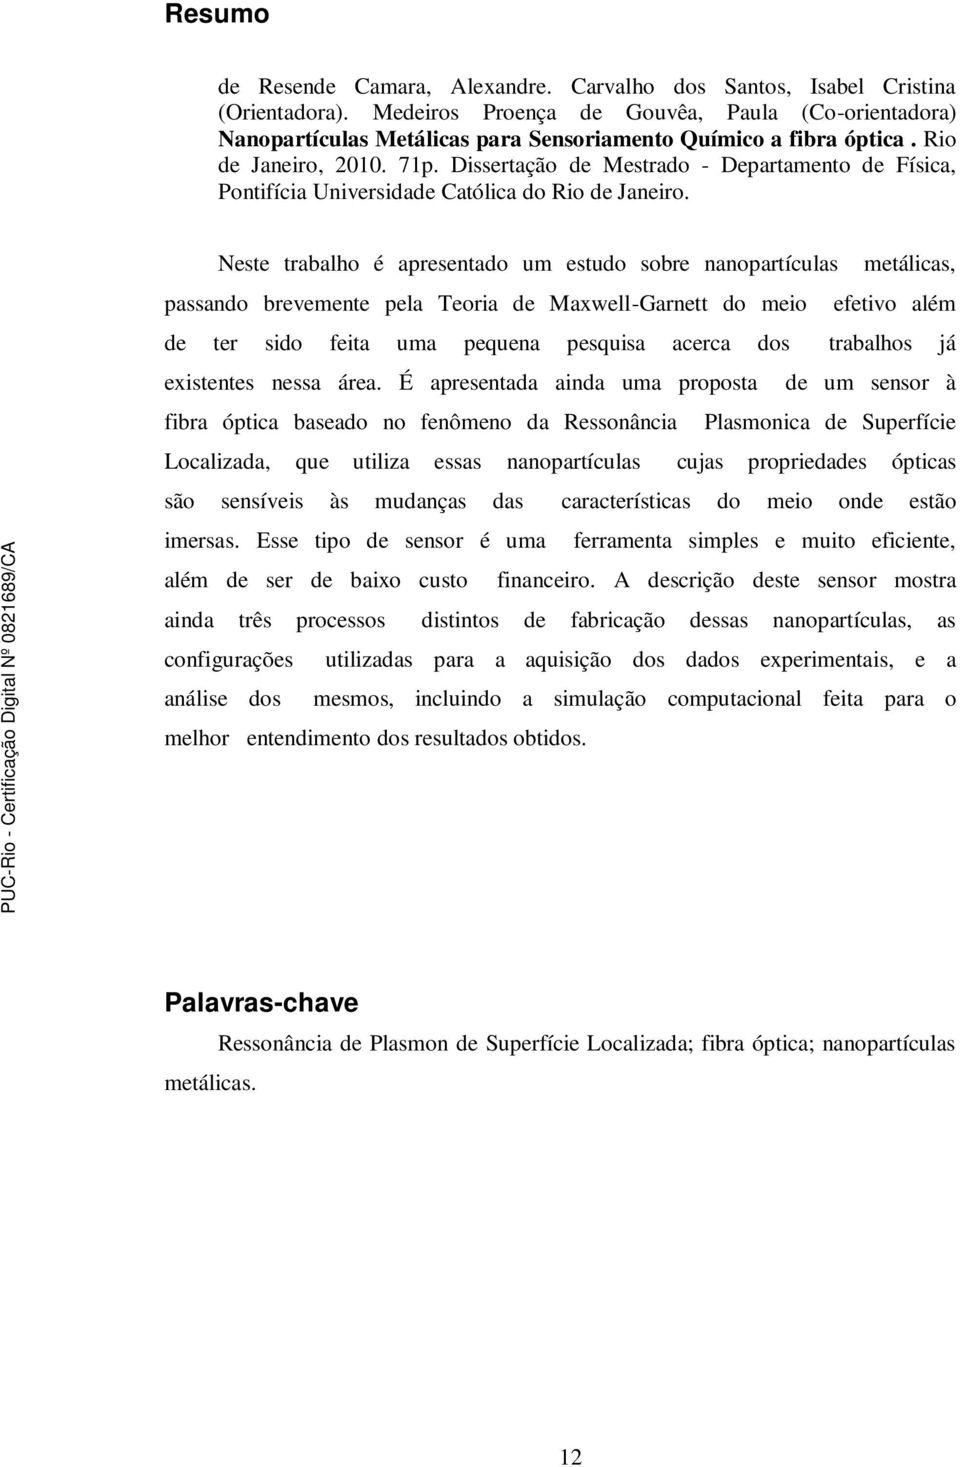 Dissertação de Mestrado - Departamento de Física, Pontifícia Universidade Católica do Rio de Janeiro.